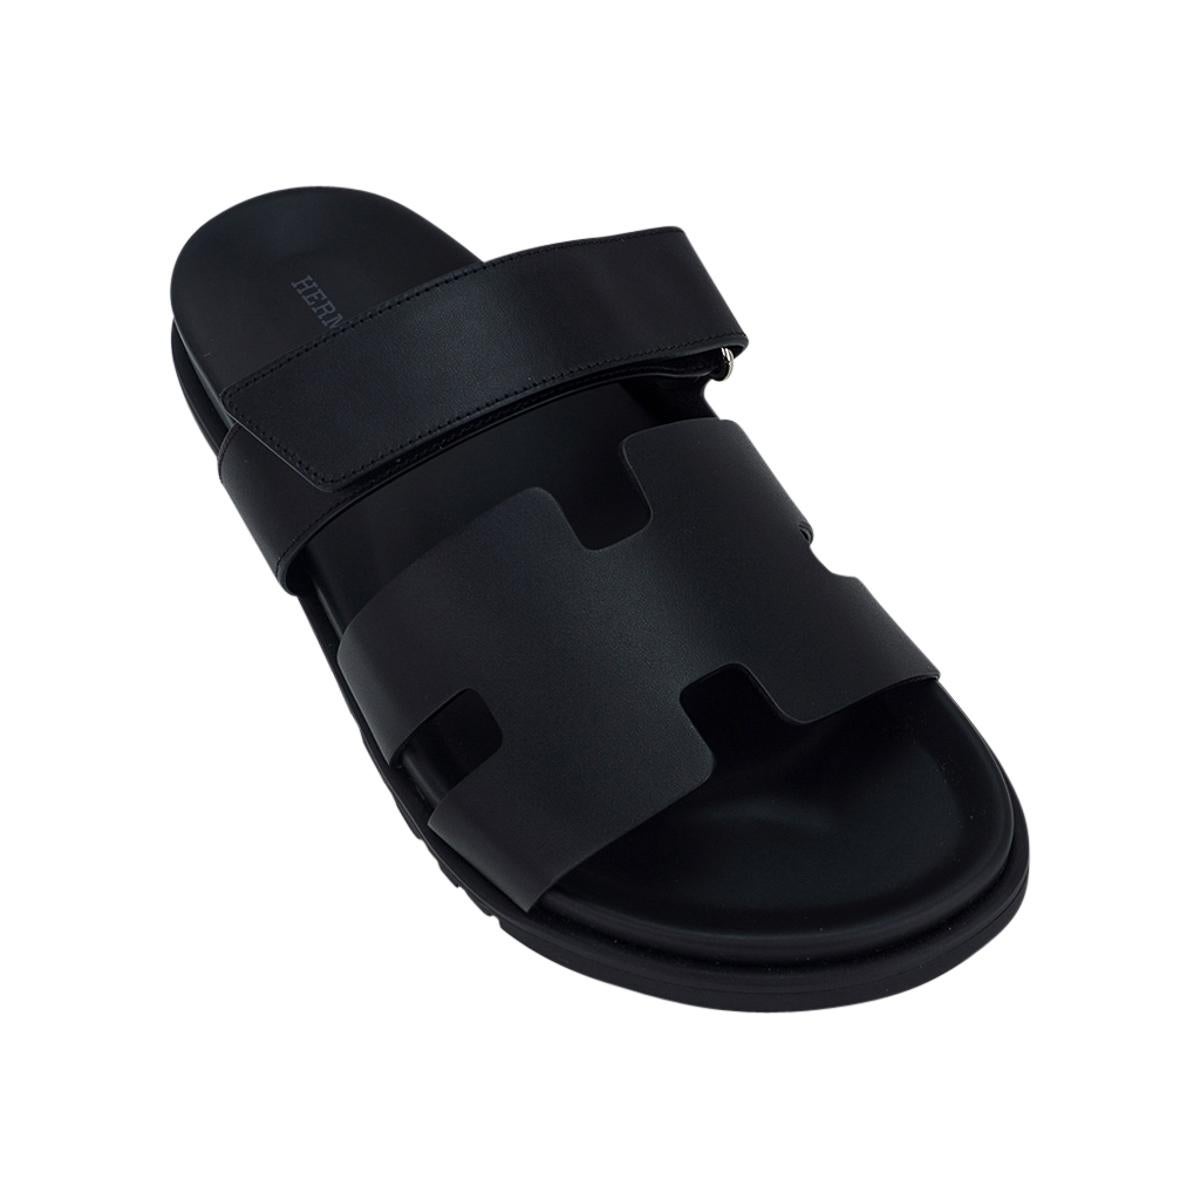 Mightychic propose une paire de sandales Hermès Chypre pour homme en édition limitée en noir.
Cuir de veau noir, semelle intérieure anatomique noire et semelle en caoutchouc noir gaufré.
La sangle sur le pied est réglable avec une fermeture